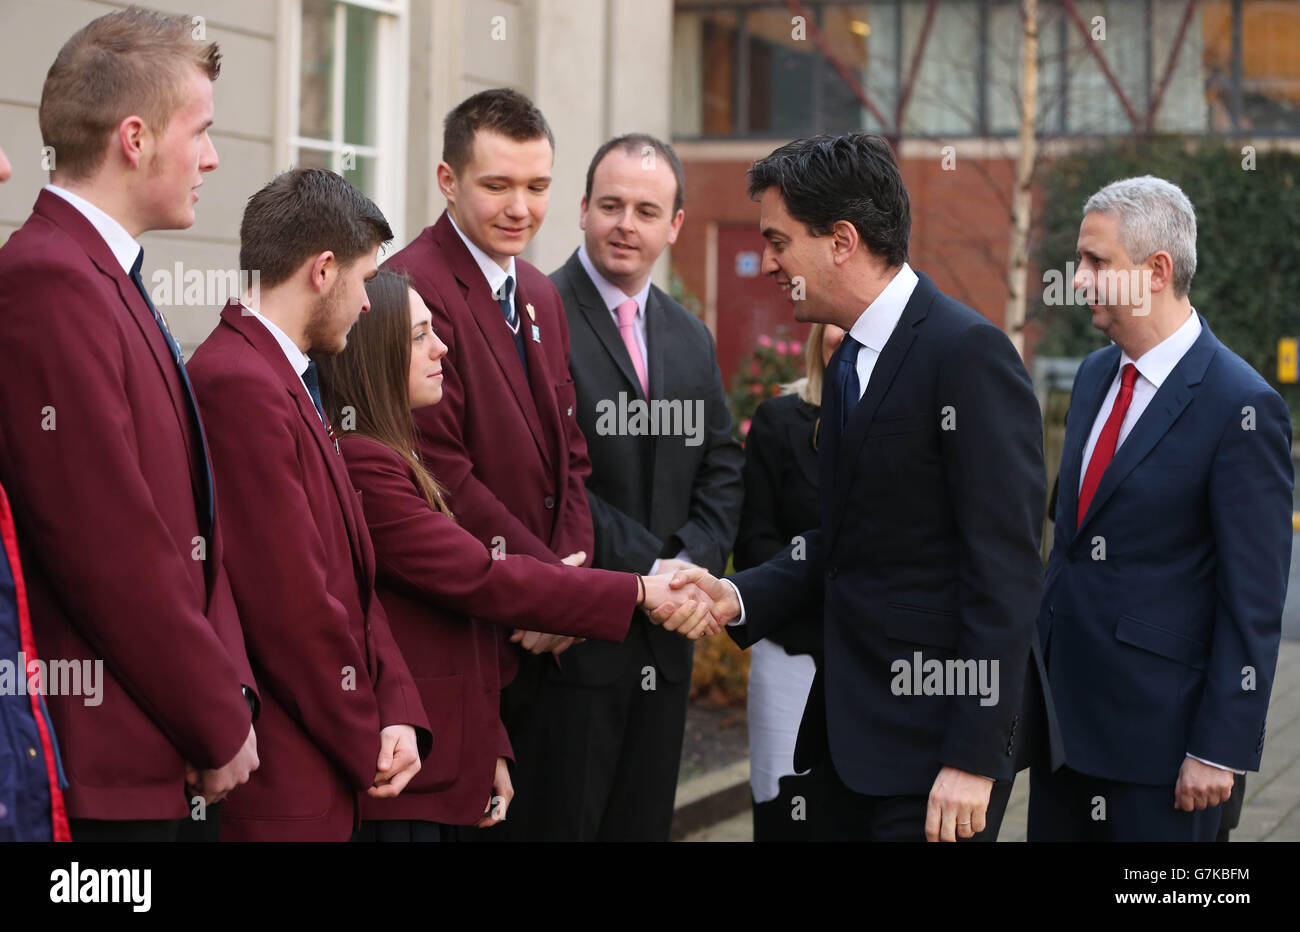 Le chef de file du travail, Ed Miliband, visite aujourd'hui le Hazelwood Integrated College à North Belfast, où il a assisté à des expériences scientifiques et rencontré des élèves du département d'études des médias. Banque D'Images